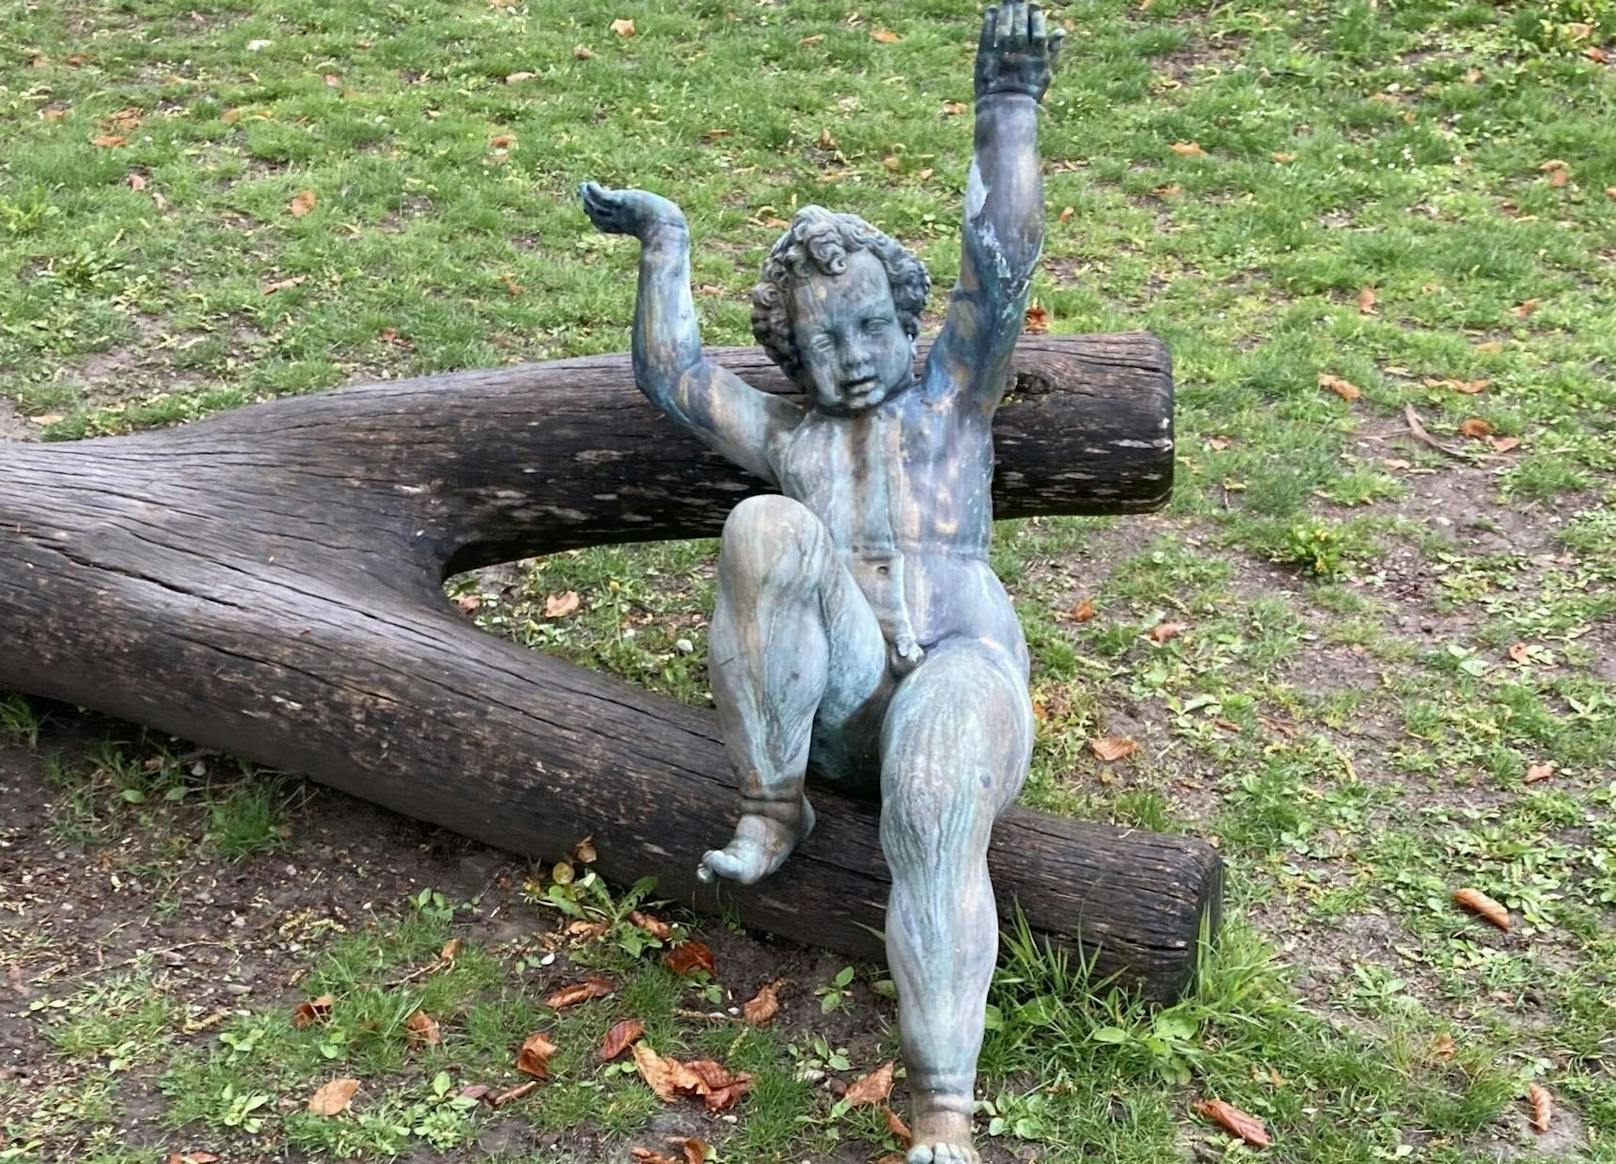 Gestohlene Brunnenfigur tauchte an skurrilem Ort auf